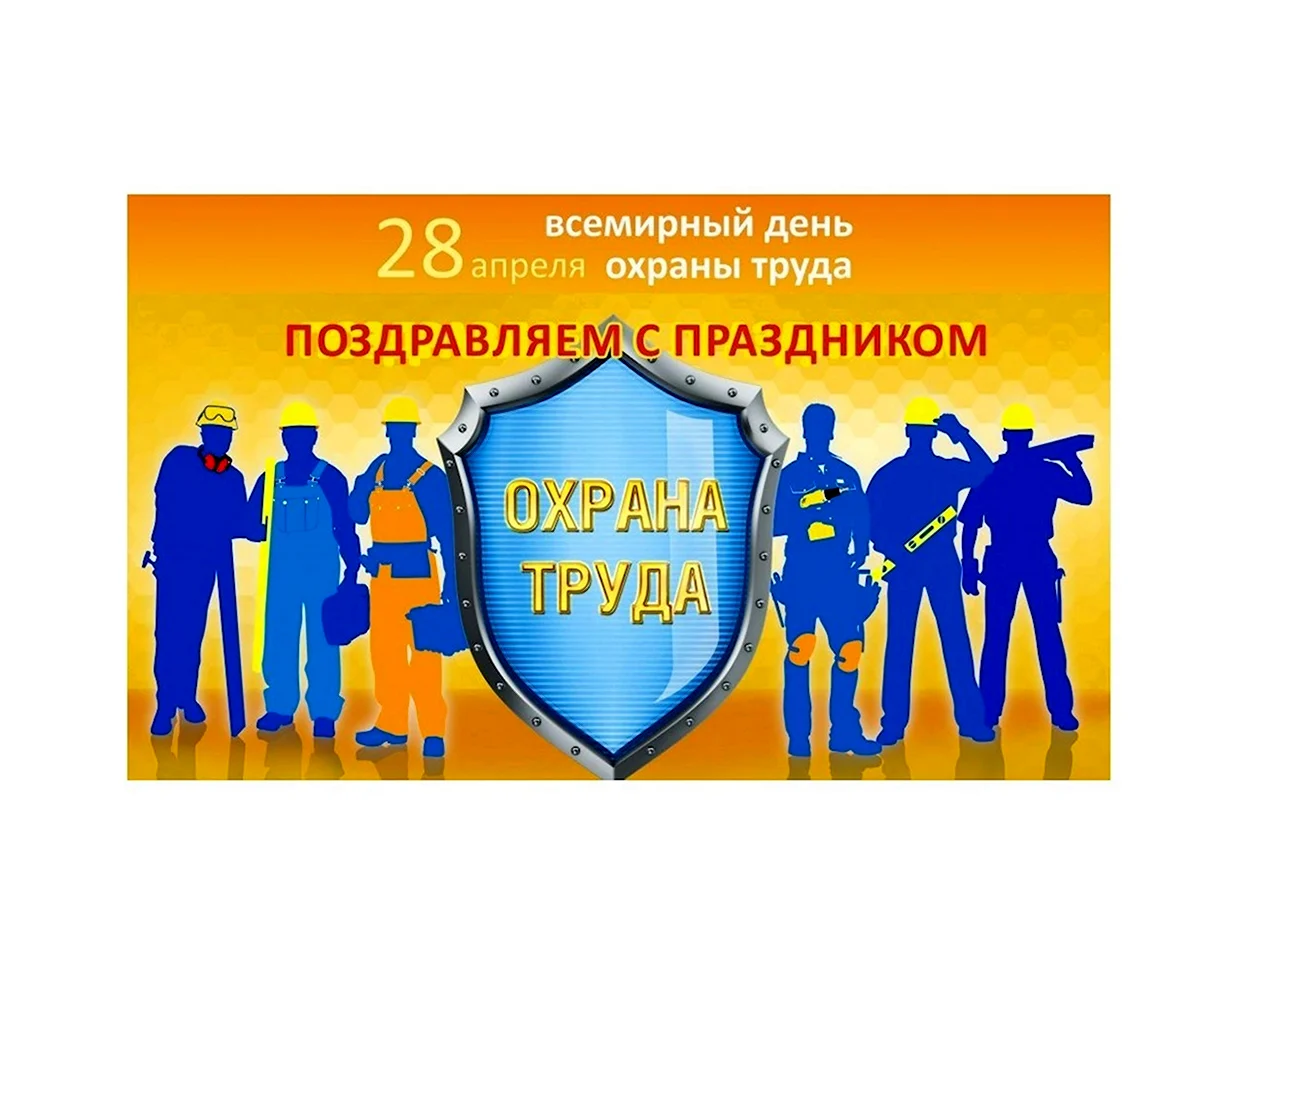 Эмблема Всемирного дня охраны труда 2021. Поздравление